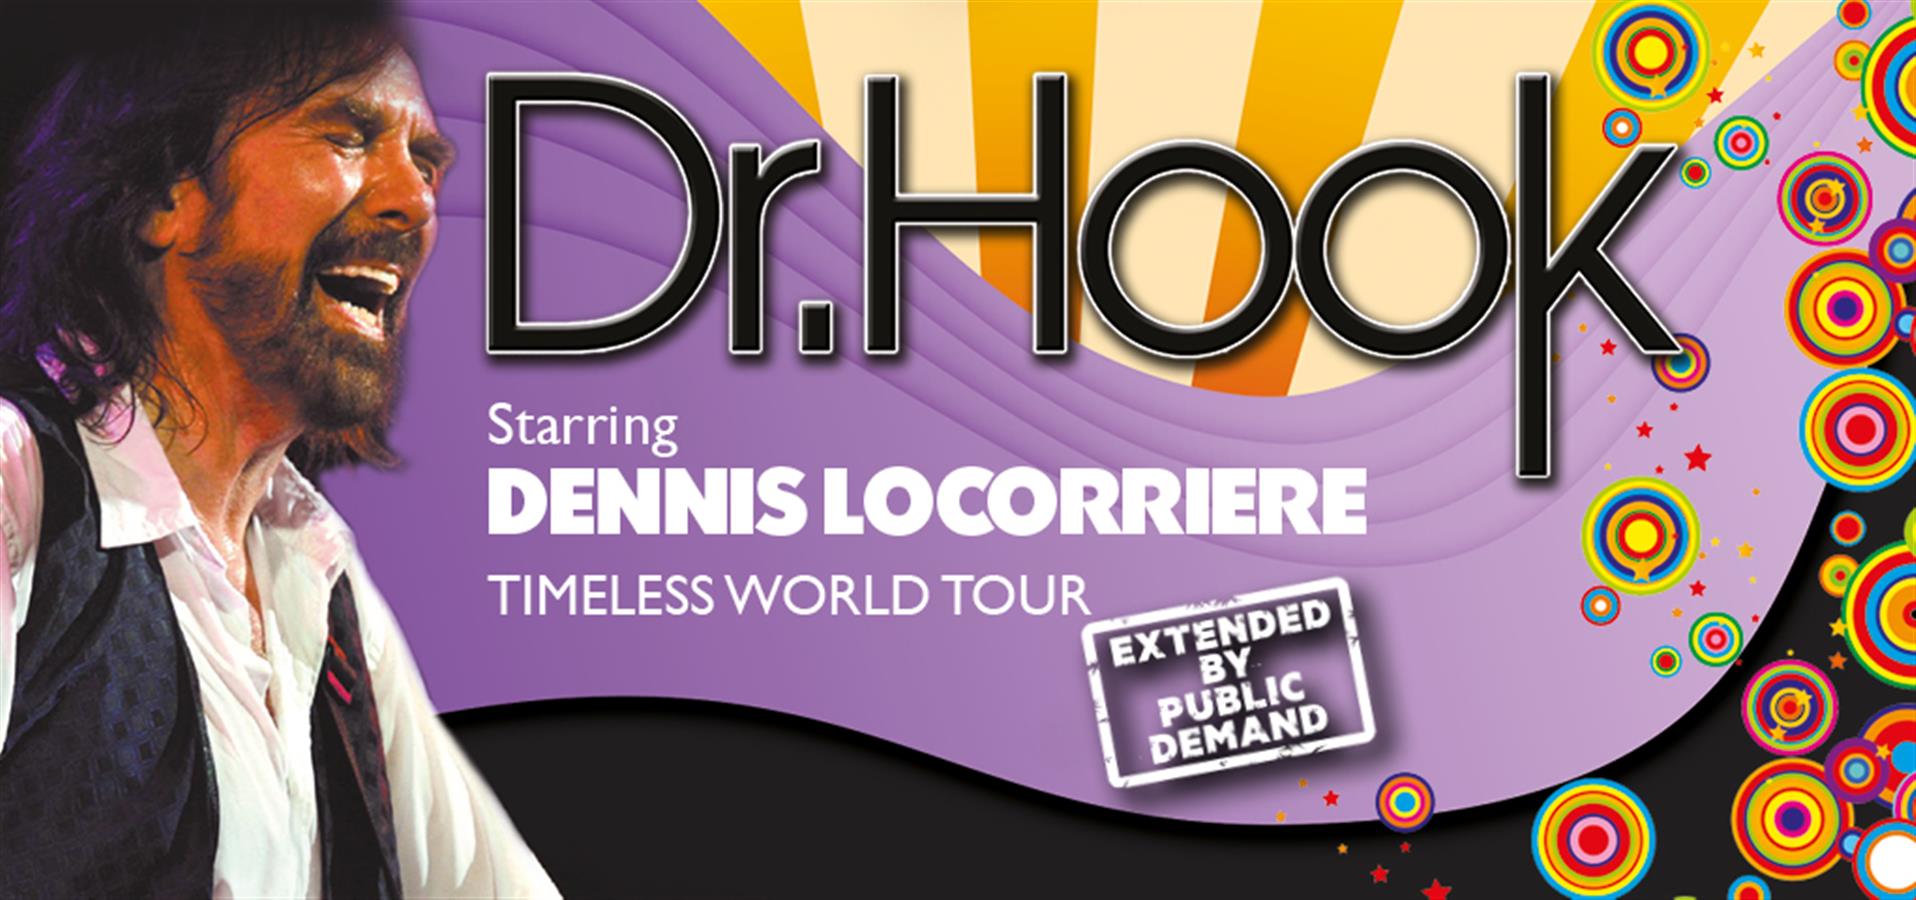 Dr Hook Starring Dennis Locorriere tickets